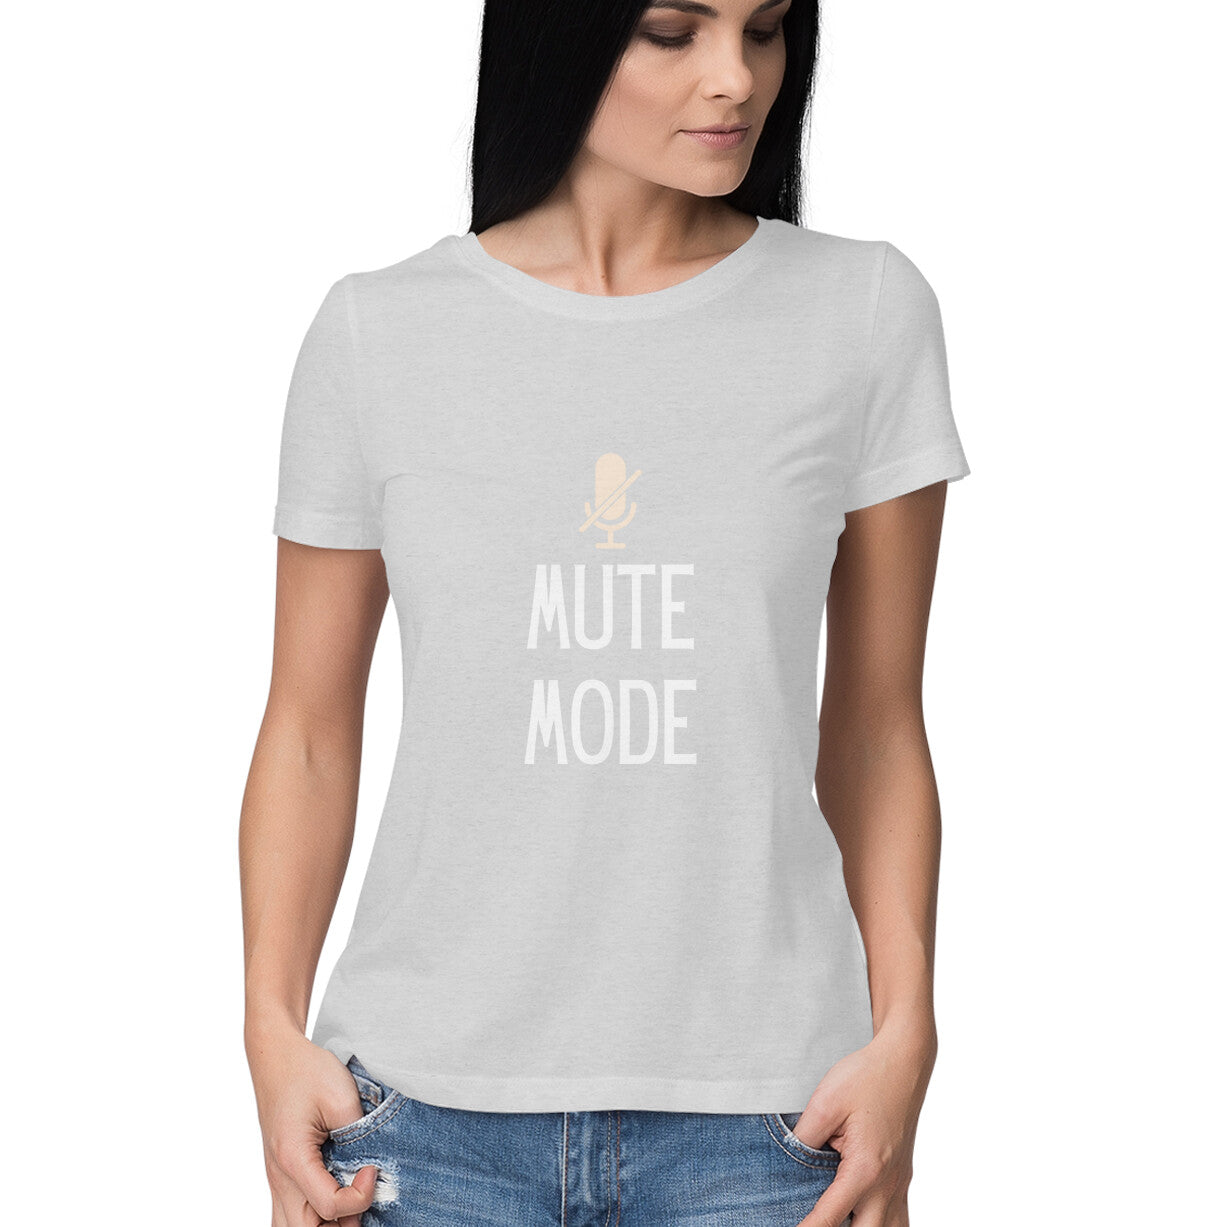 Mute mode Women's tee